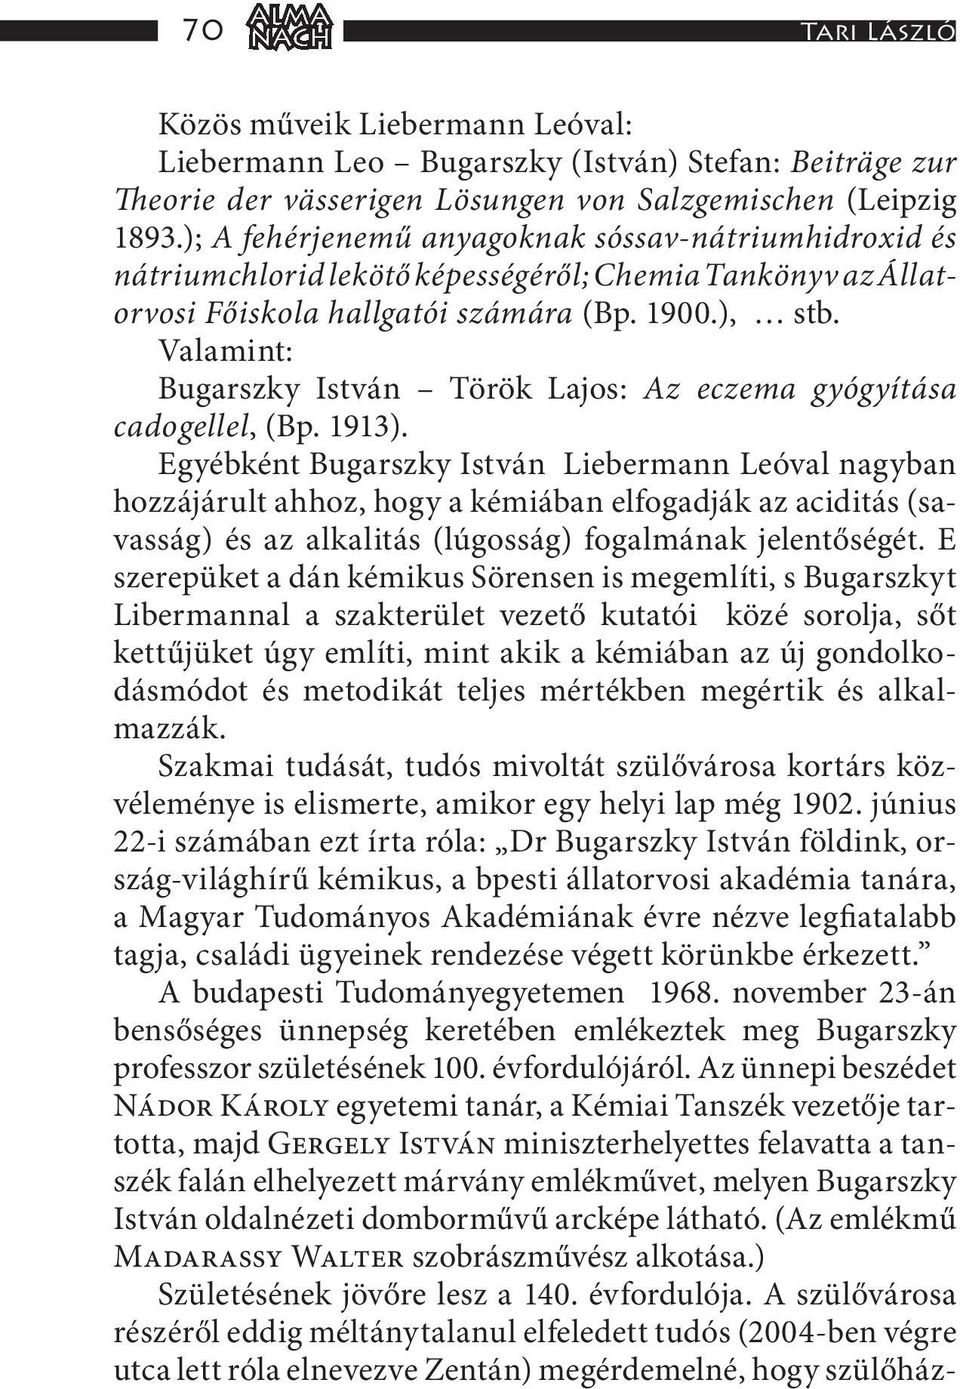 Valamint: Bugarszky István Török Lajos: Az eczema gyógyítása cadogellel, (Bp. 1913).